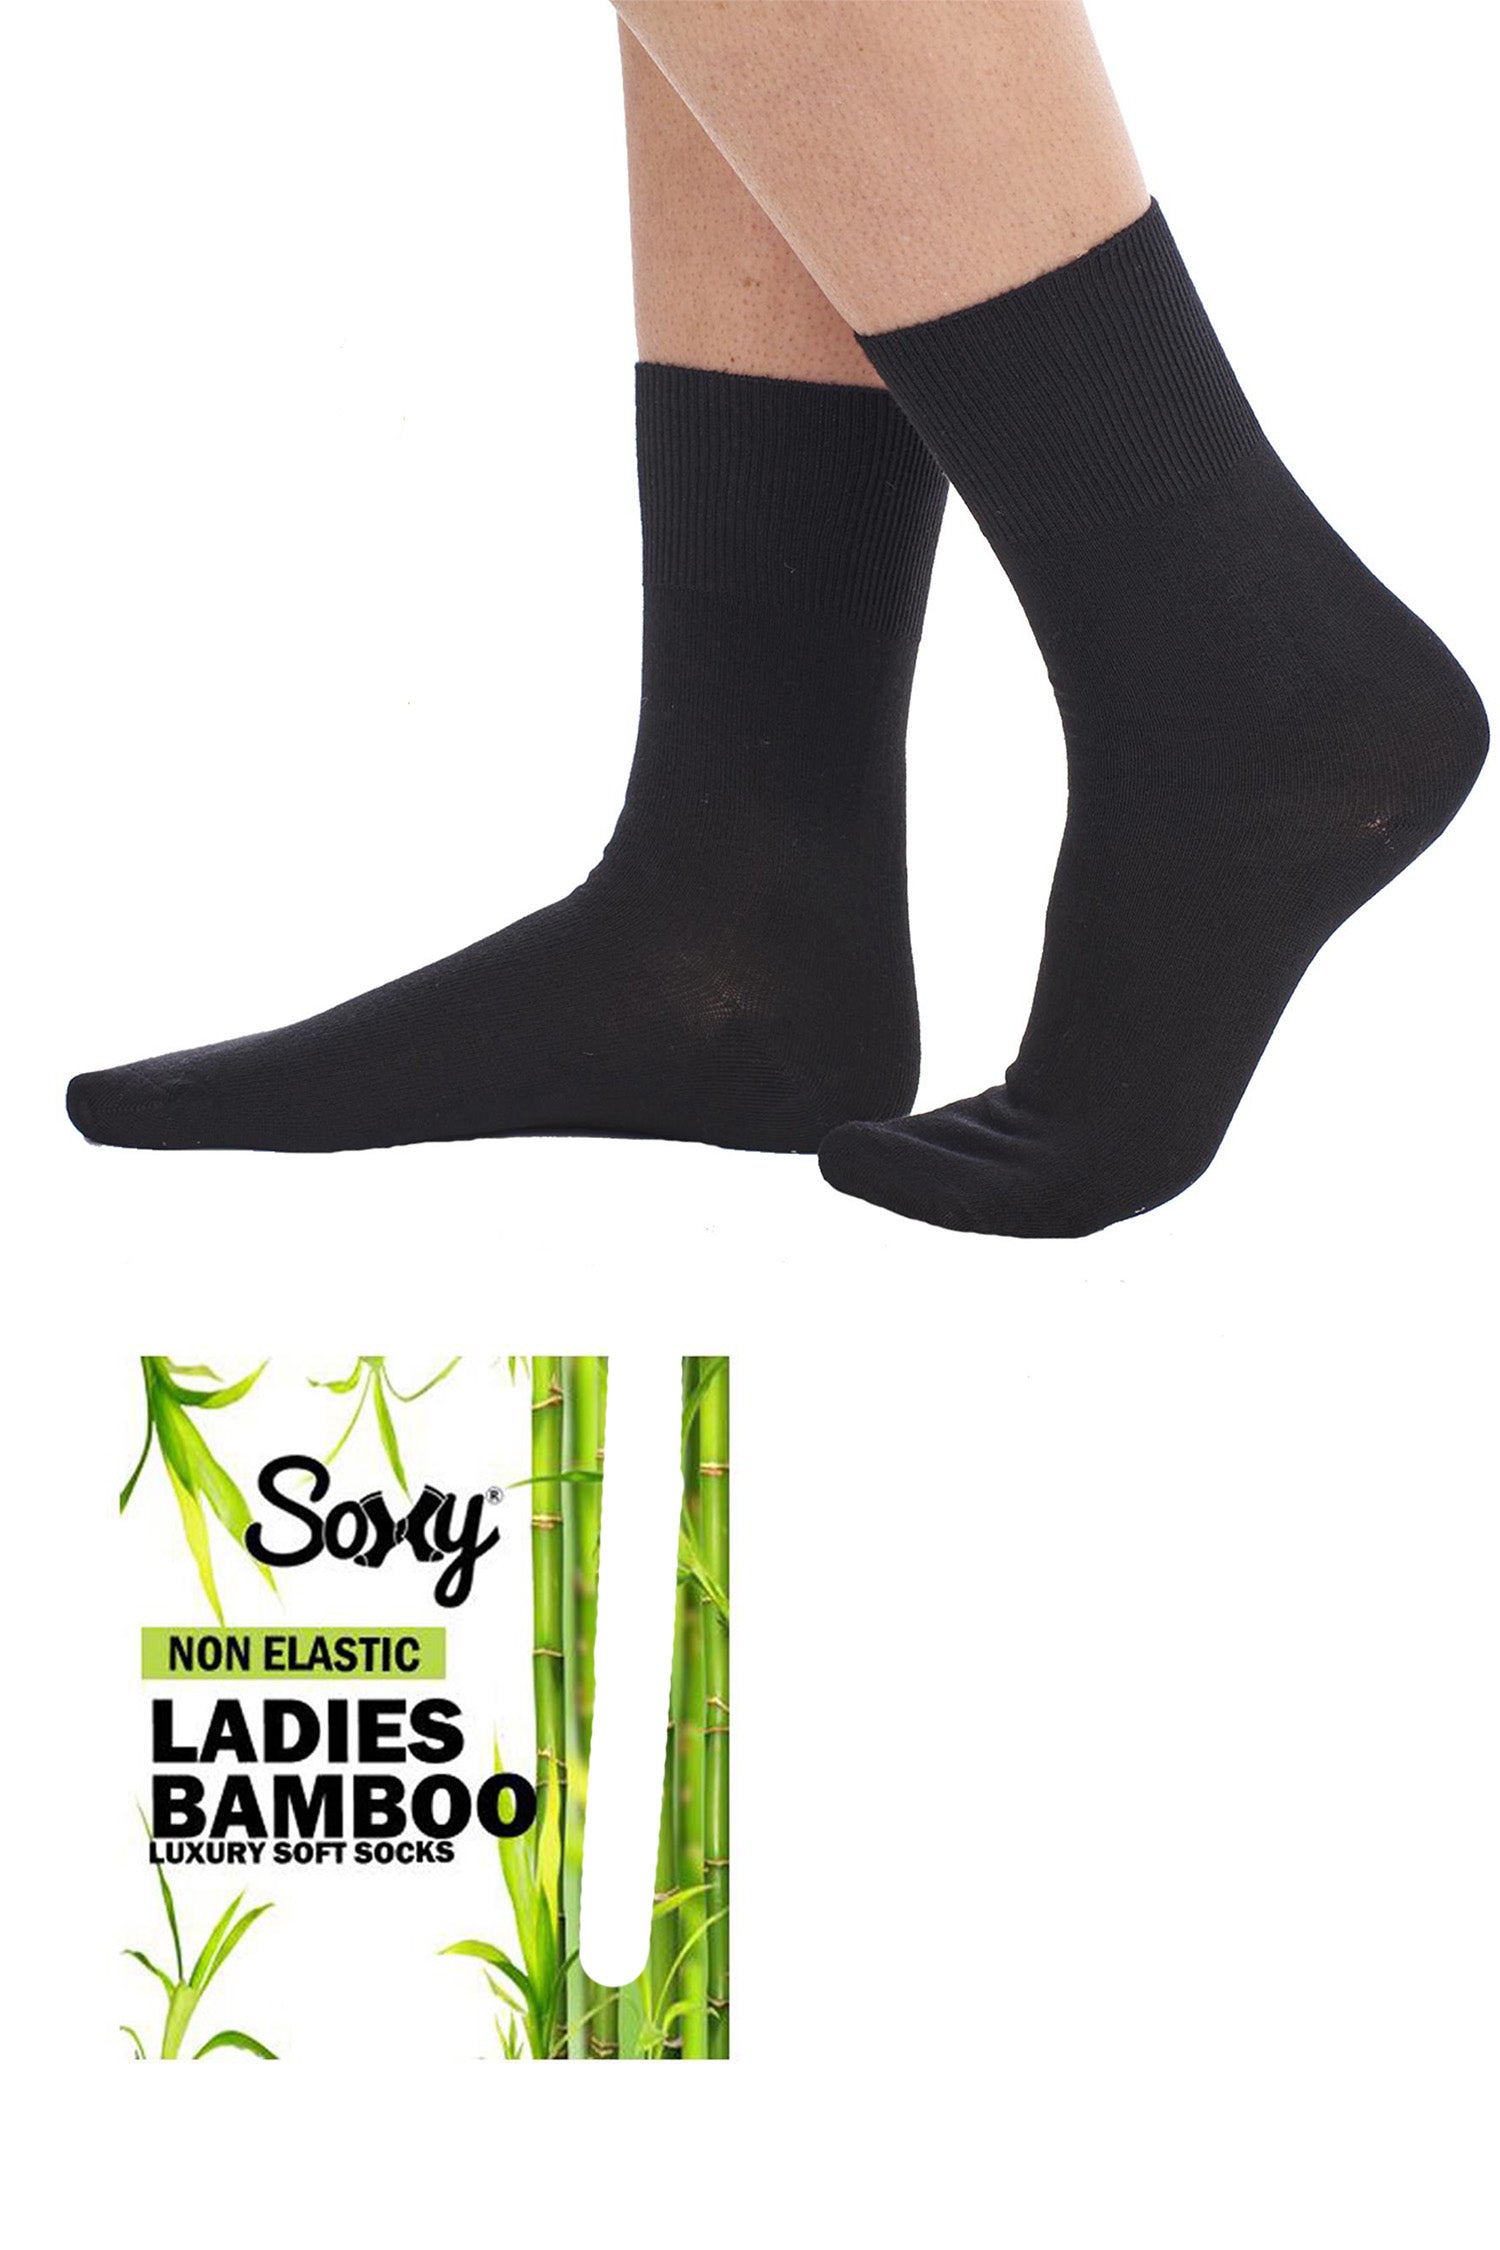 Ladies Bamboo Socks, Mid Calf, Non Elastic Anti Bacterial Socks - Black (12 Pack)